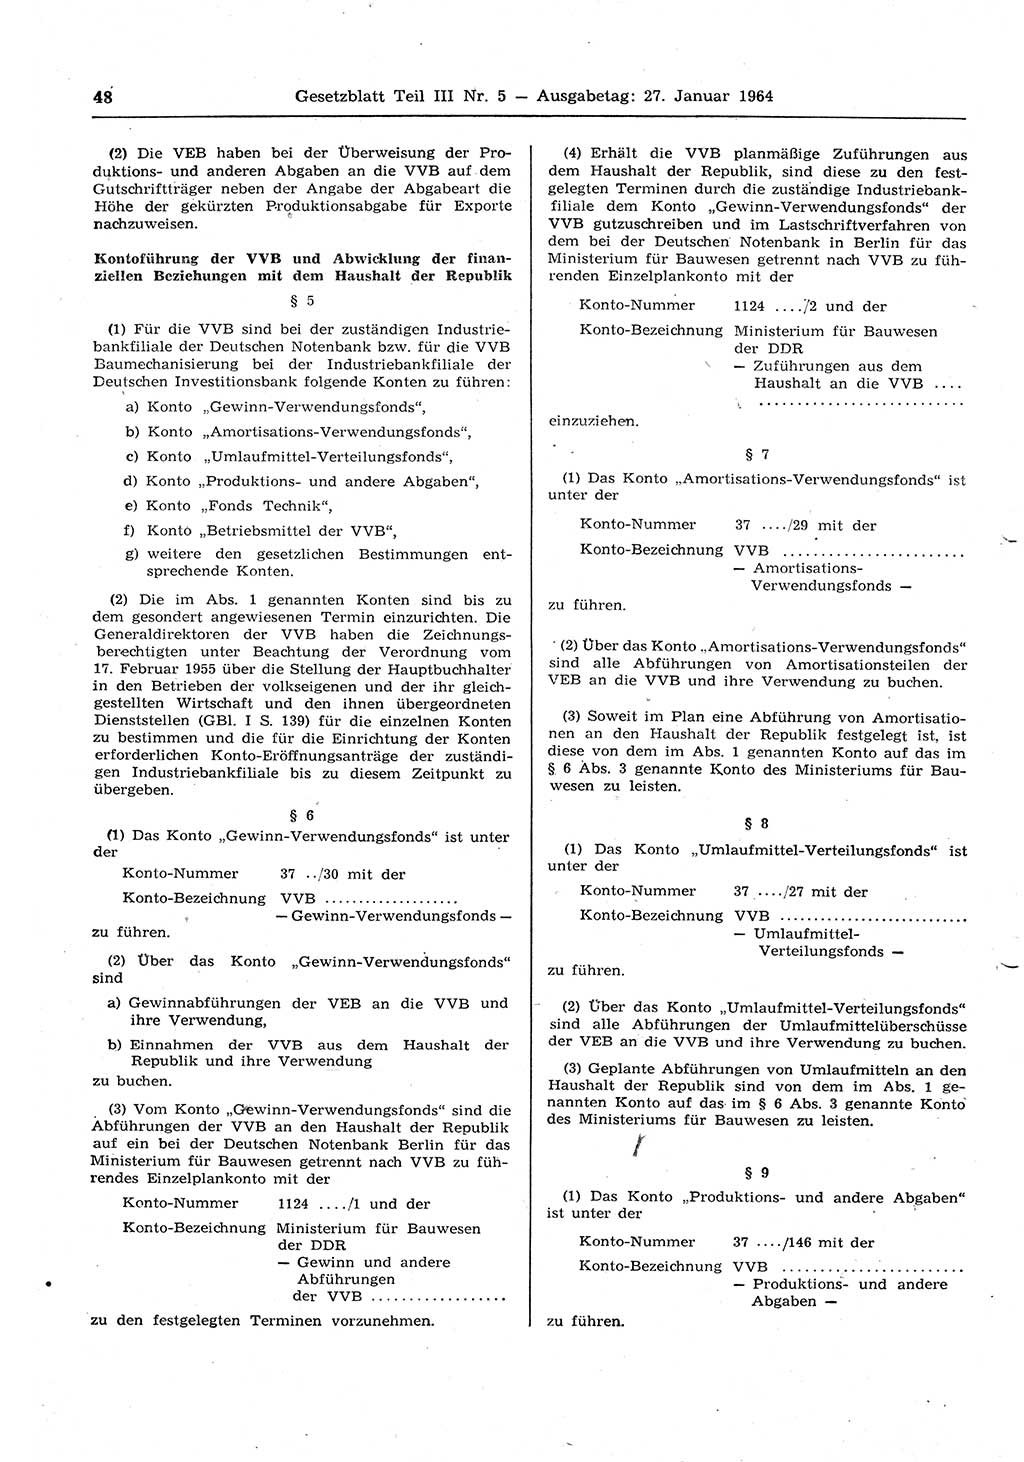 Gesetzblatt (GBl.) der Deutschen Demokratischen Republik (DDR) Teil ⅠⅠⅠ 1964, Seite 48 (GBl. DDR ⅠⅠⅠ 1964, S. 48)